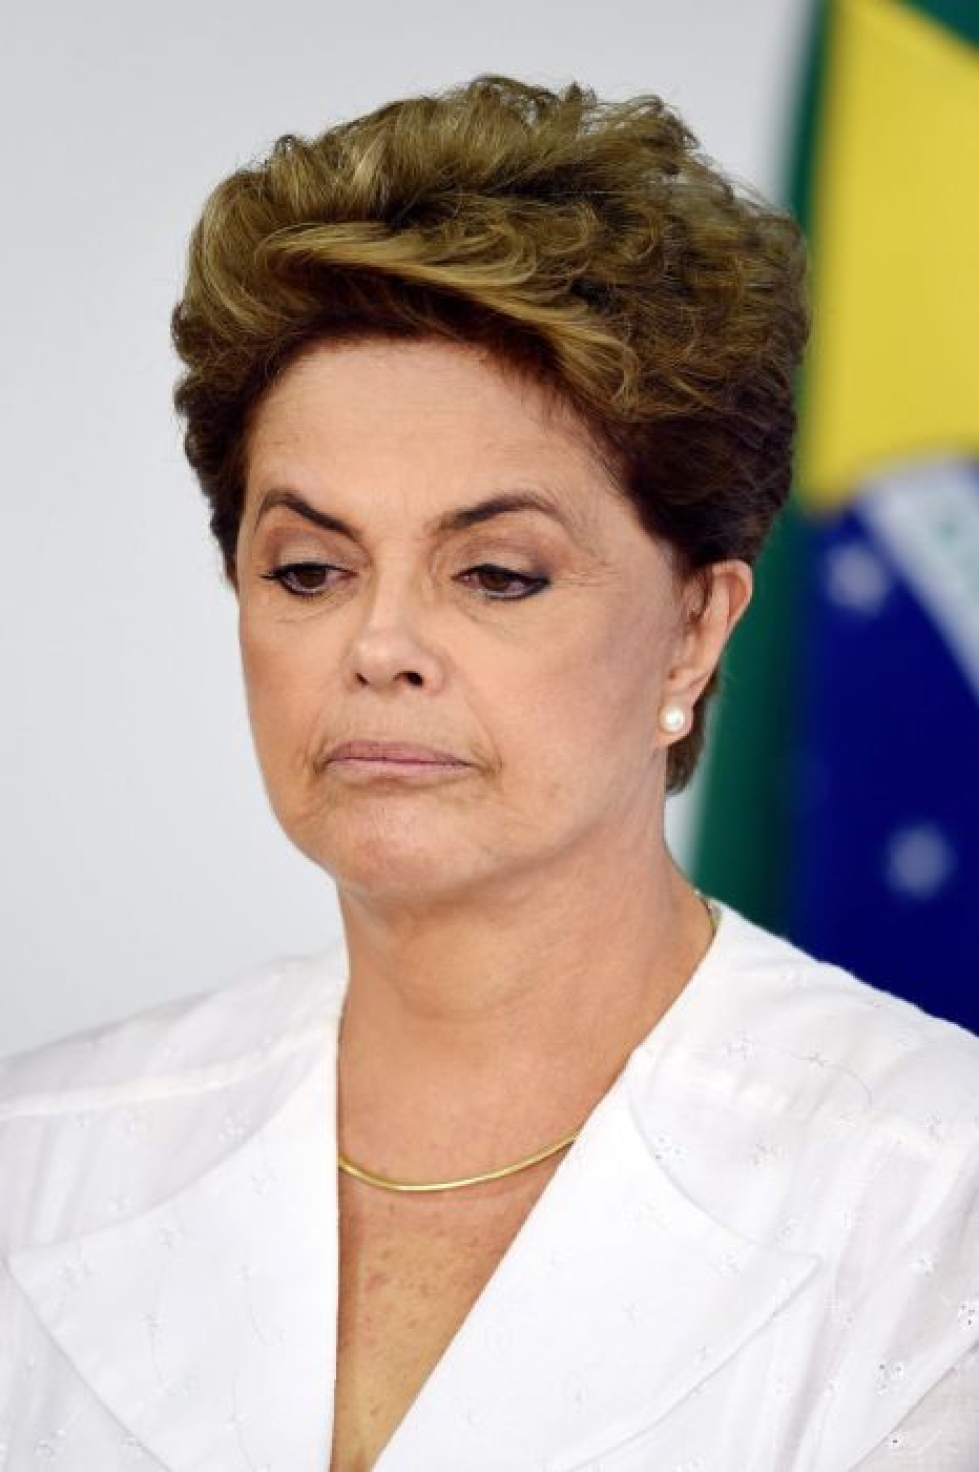 Brasilian presidenttiä Dilma Rousseffia uhkaa syyte. Lehtikuva/AFP